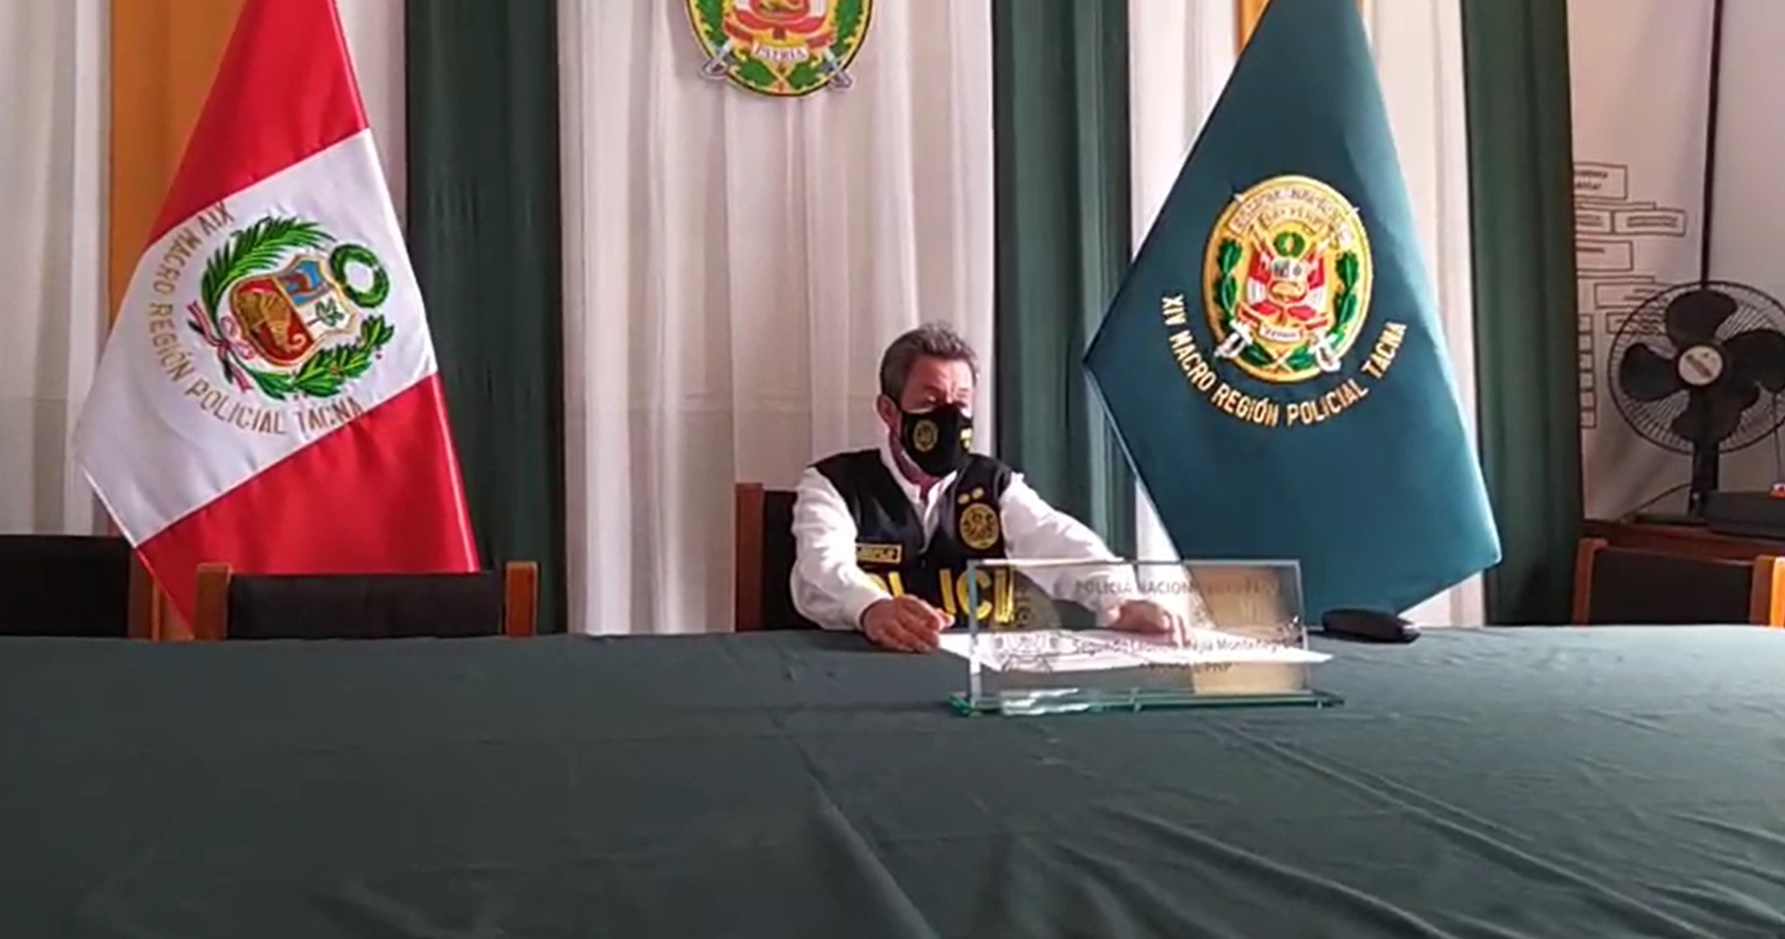 Jefe de la macrorregión policial Tacna pide disculpas por efectivo hallado en una fiesta COVID